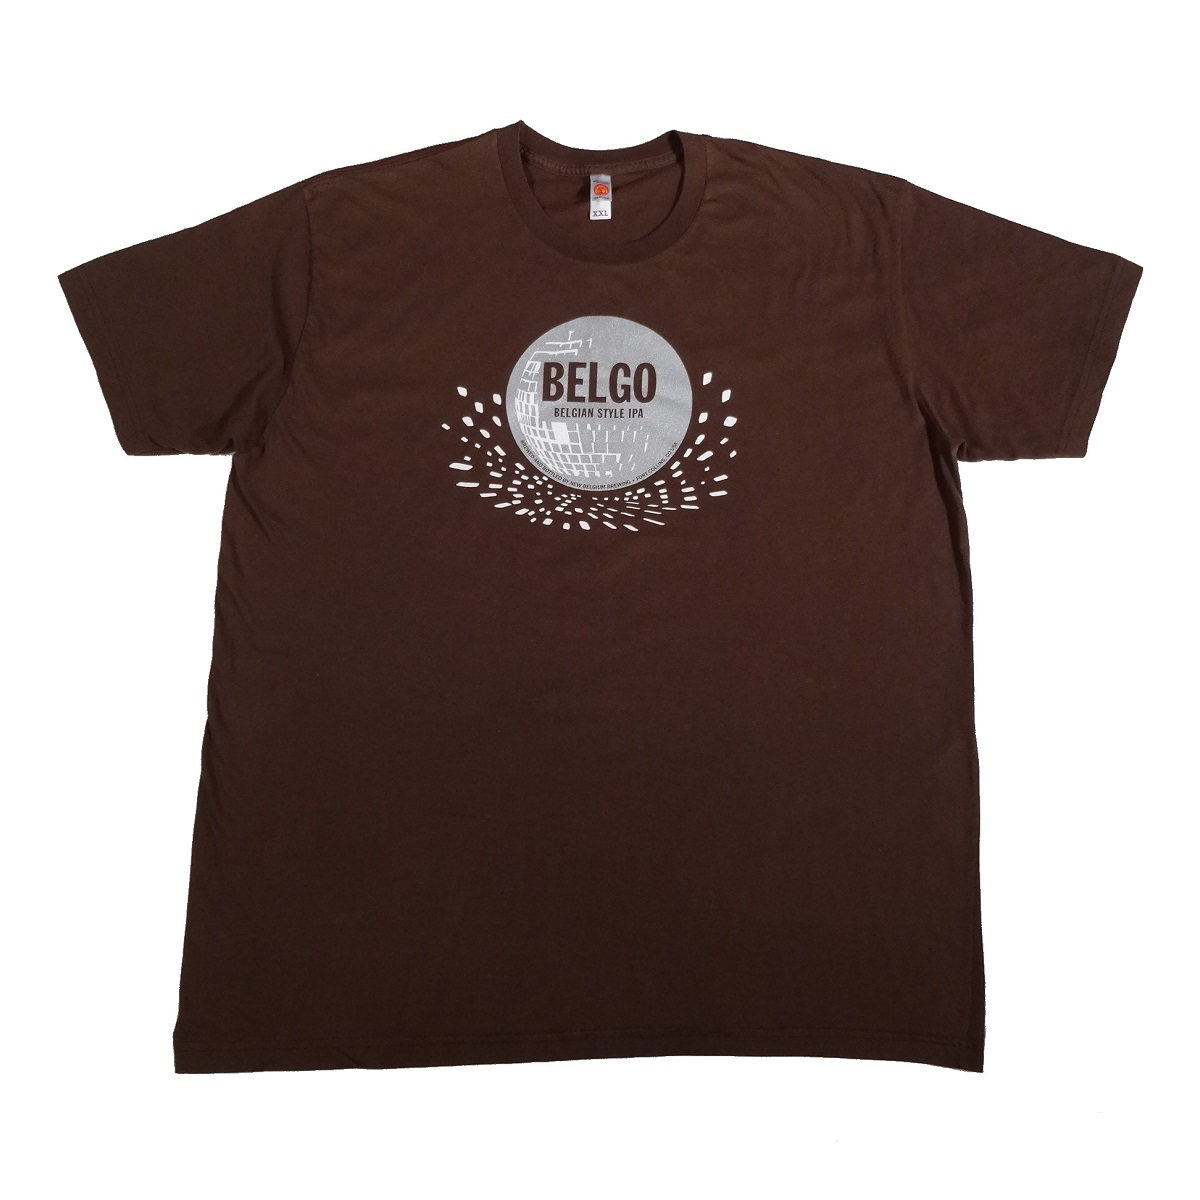 belgo belgian style ipa t shirt new belgium brewing front